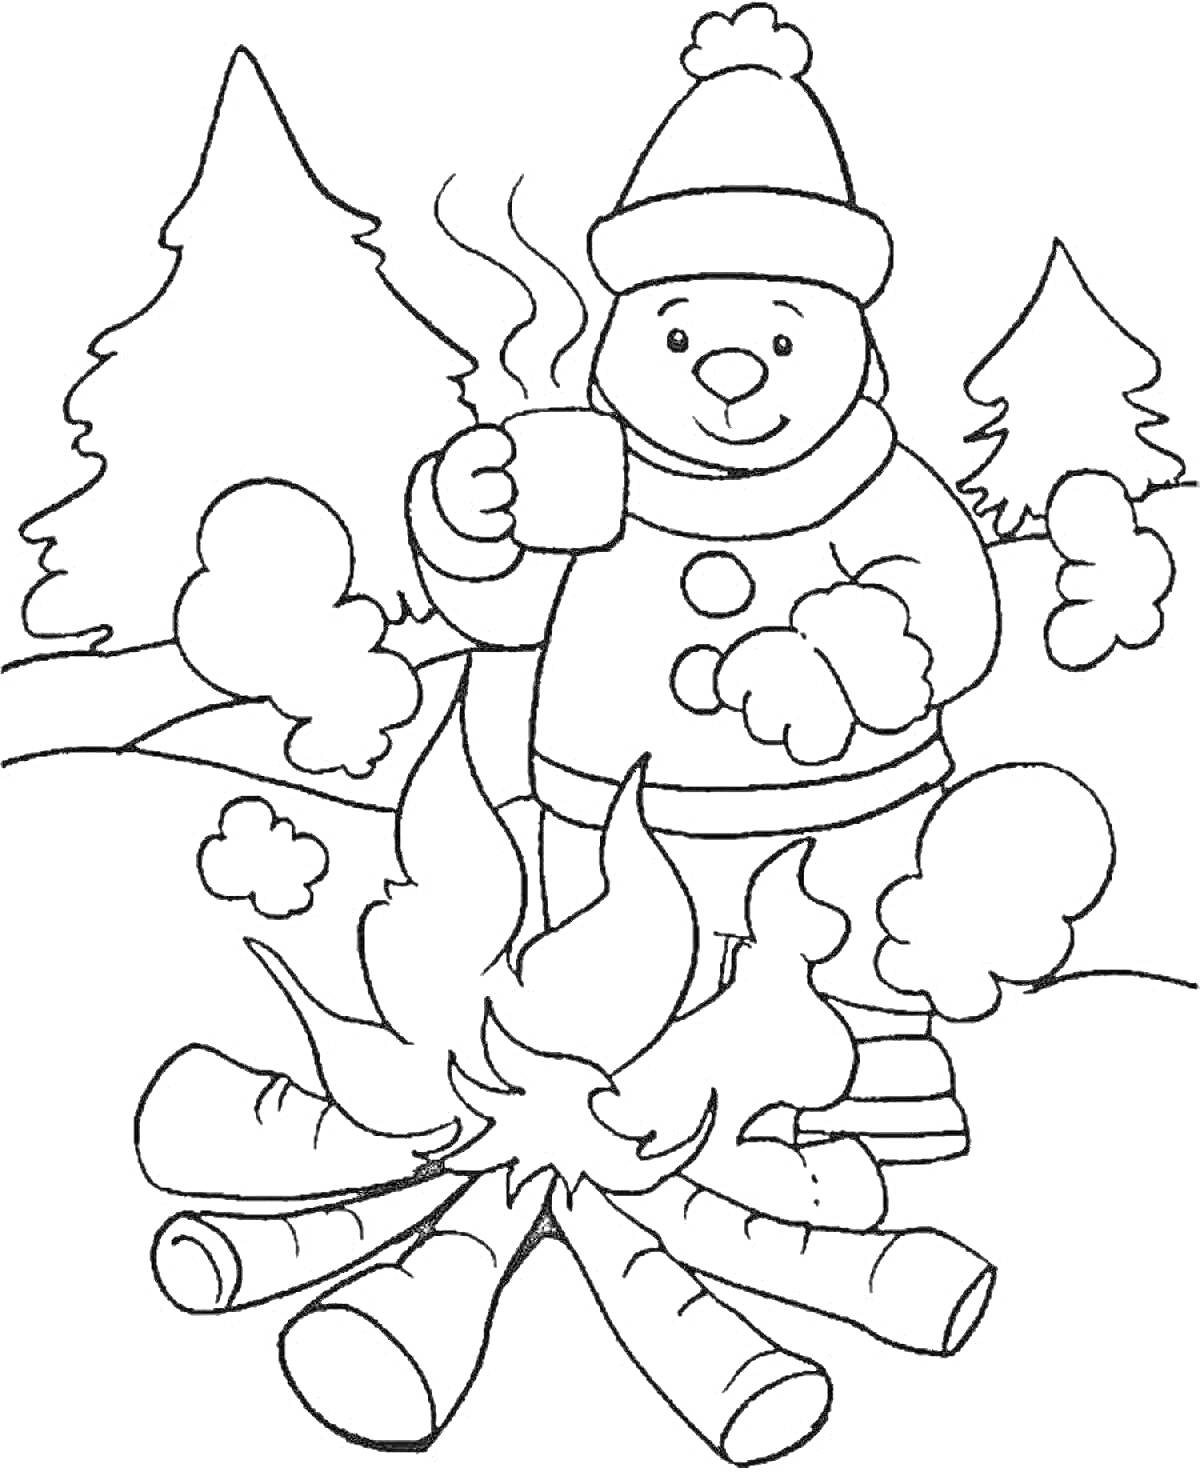 Ребенок в зимней одежде пьет горячий напиток у костра на фоне леса